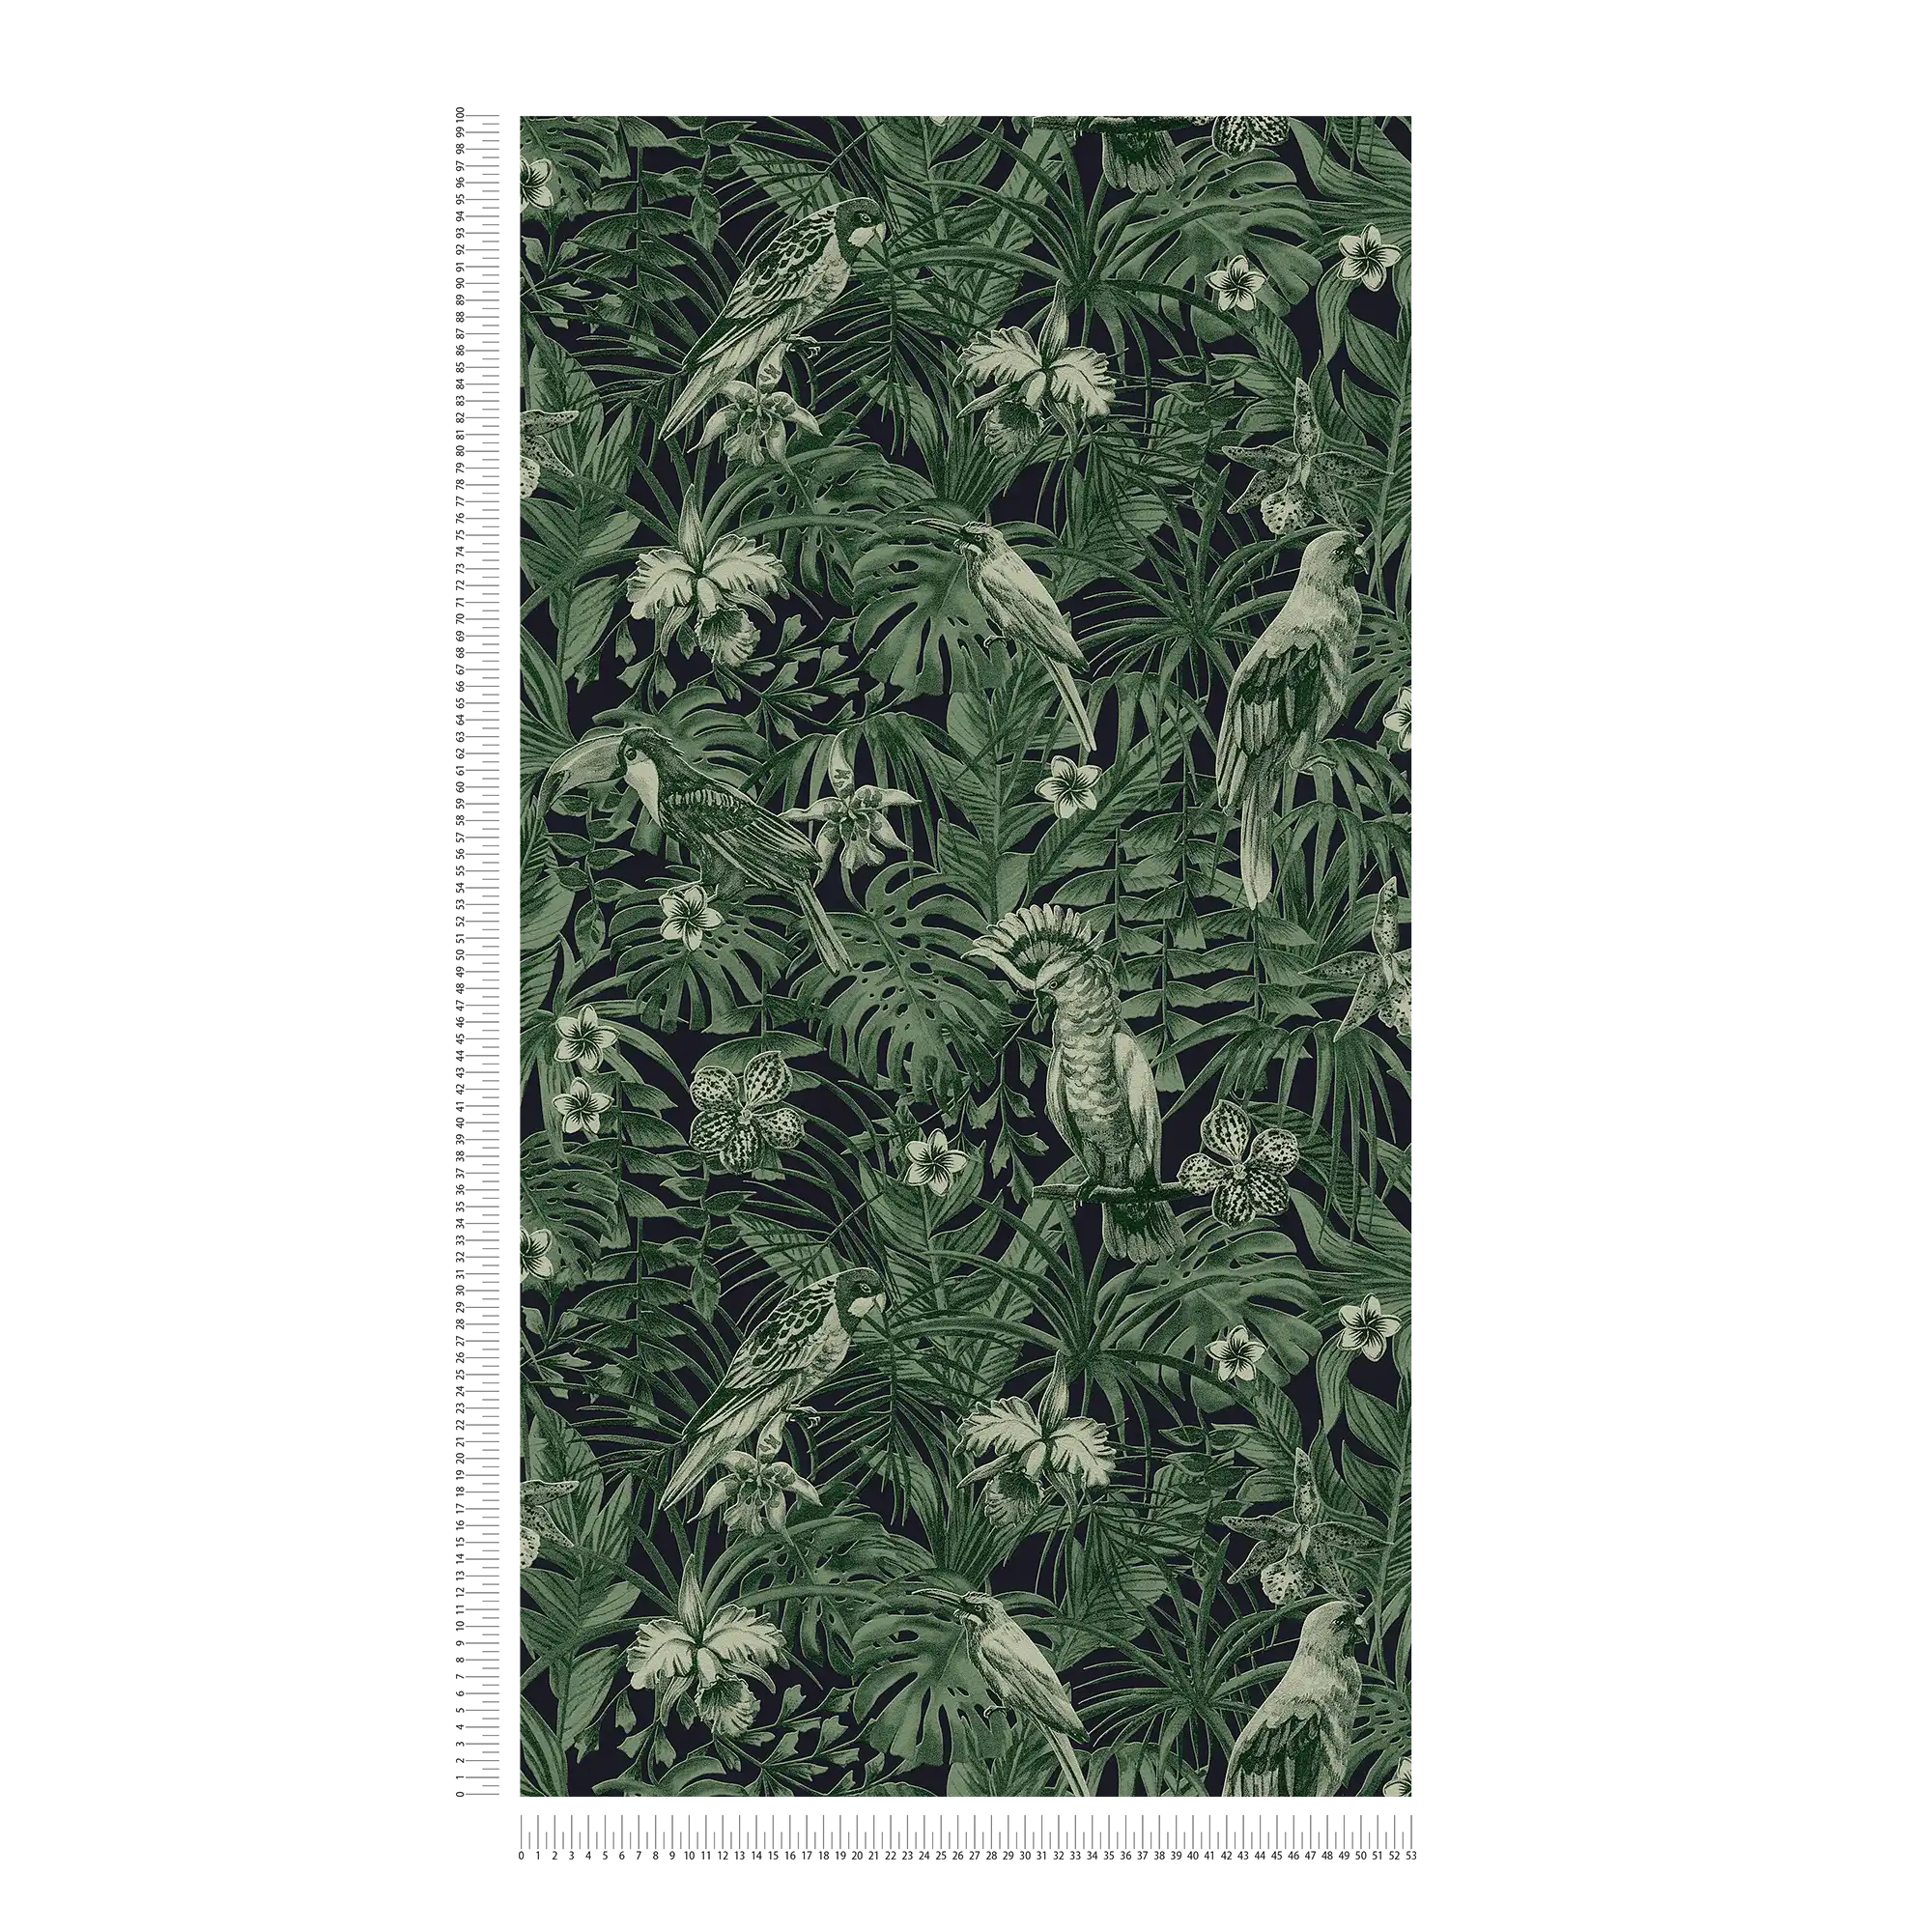             carta da parati uccelli tropicali e fiori esotici - verde, nero
        